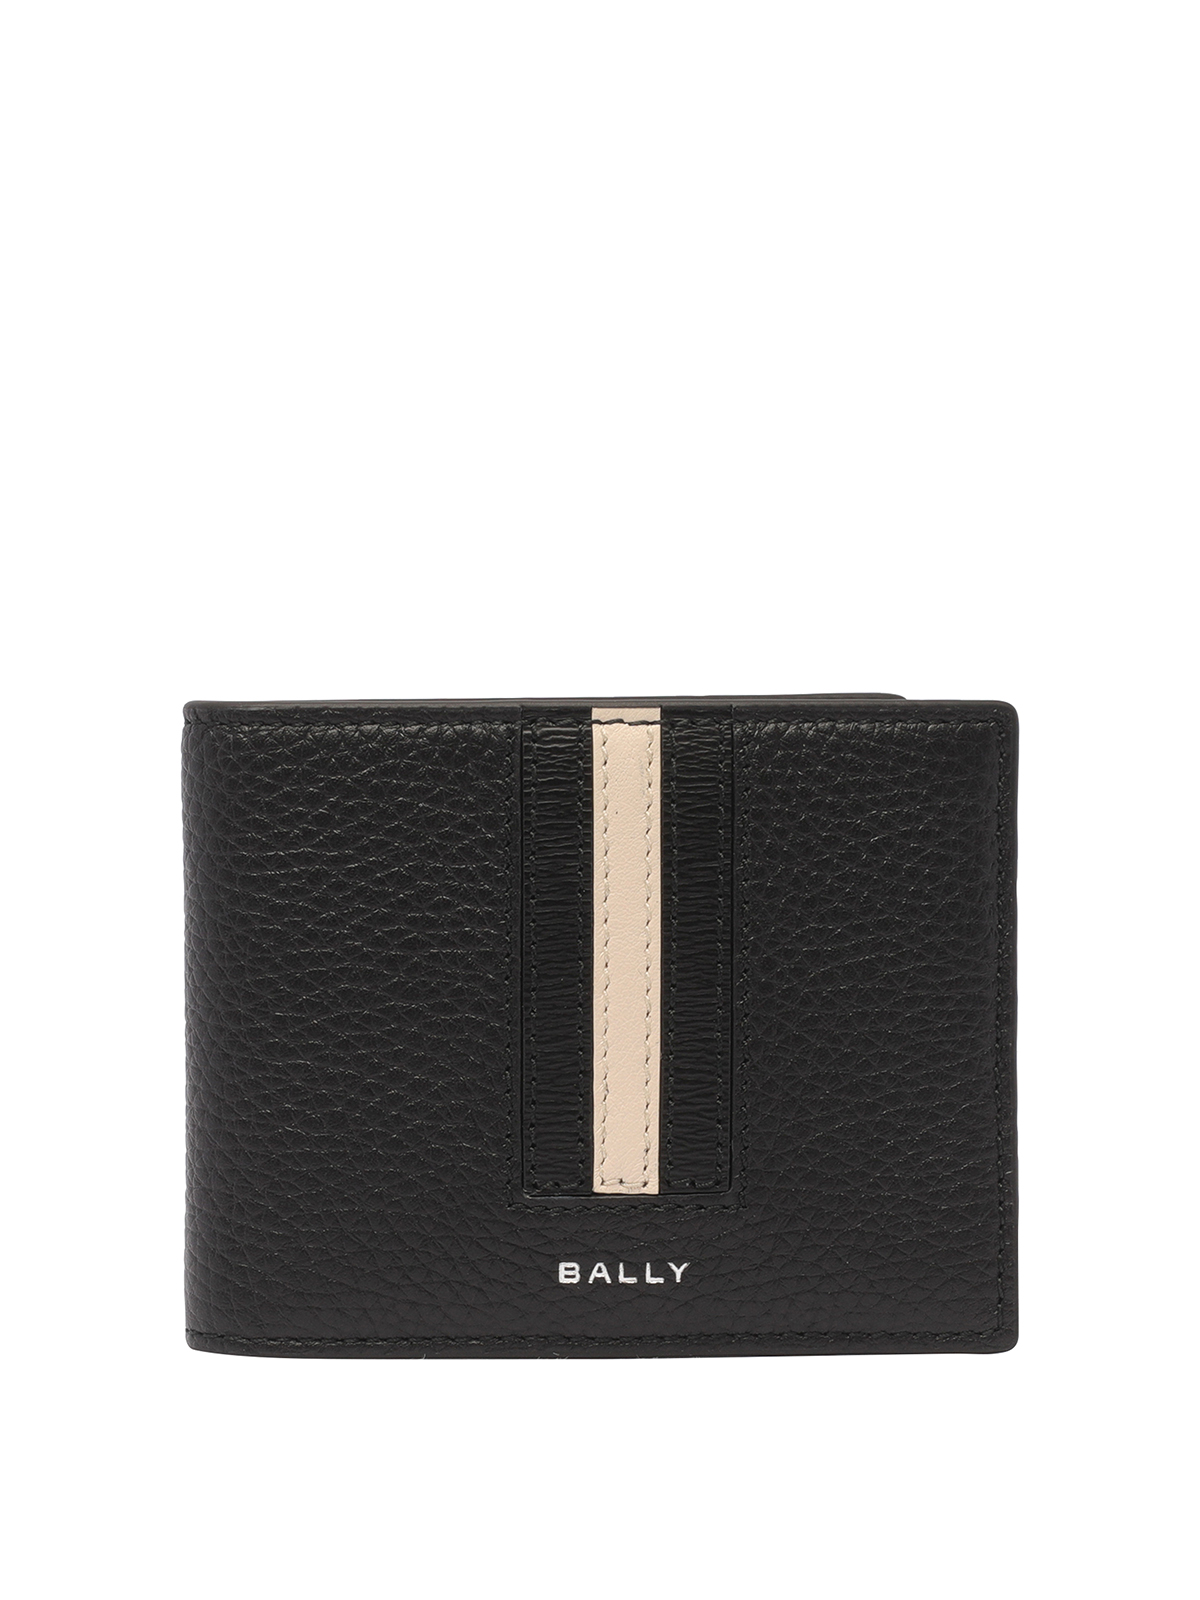 Bally Logo Wallet In Black